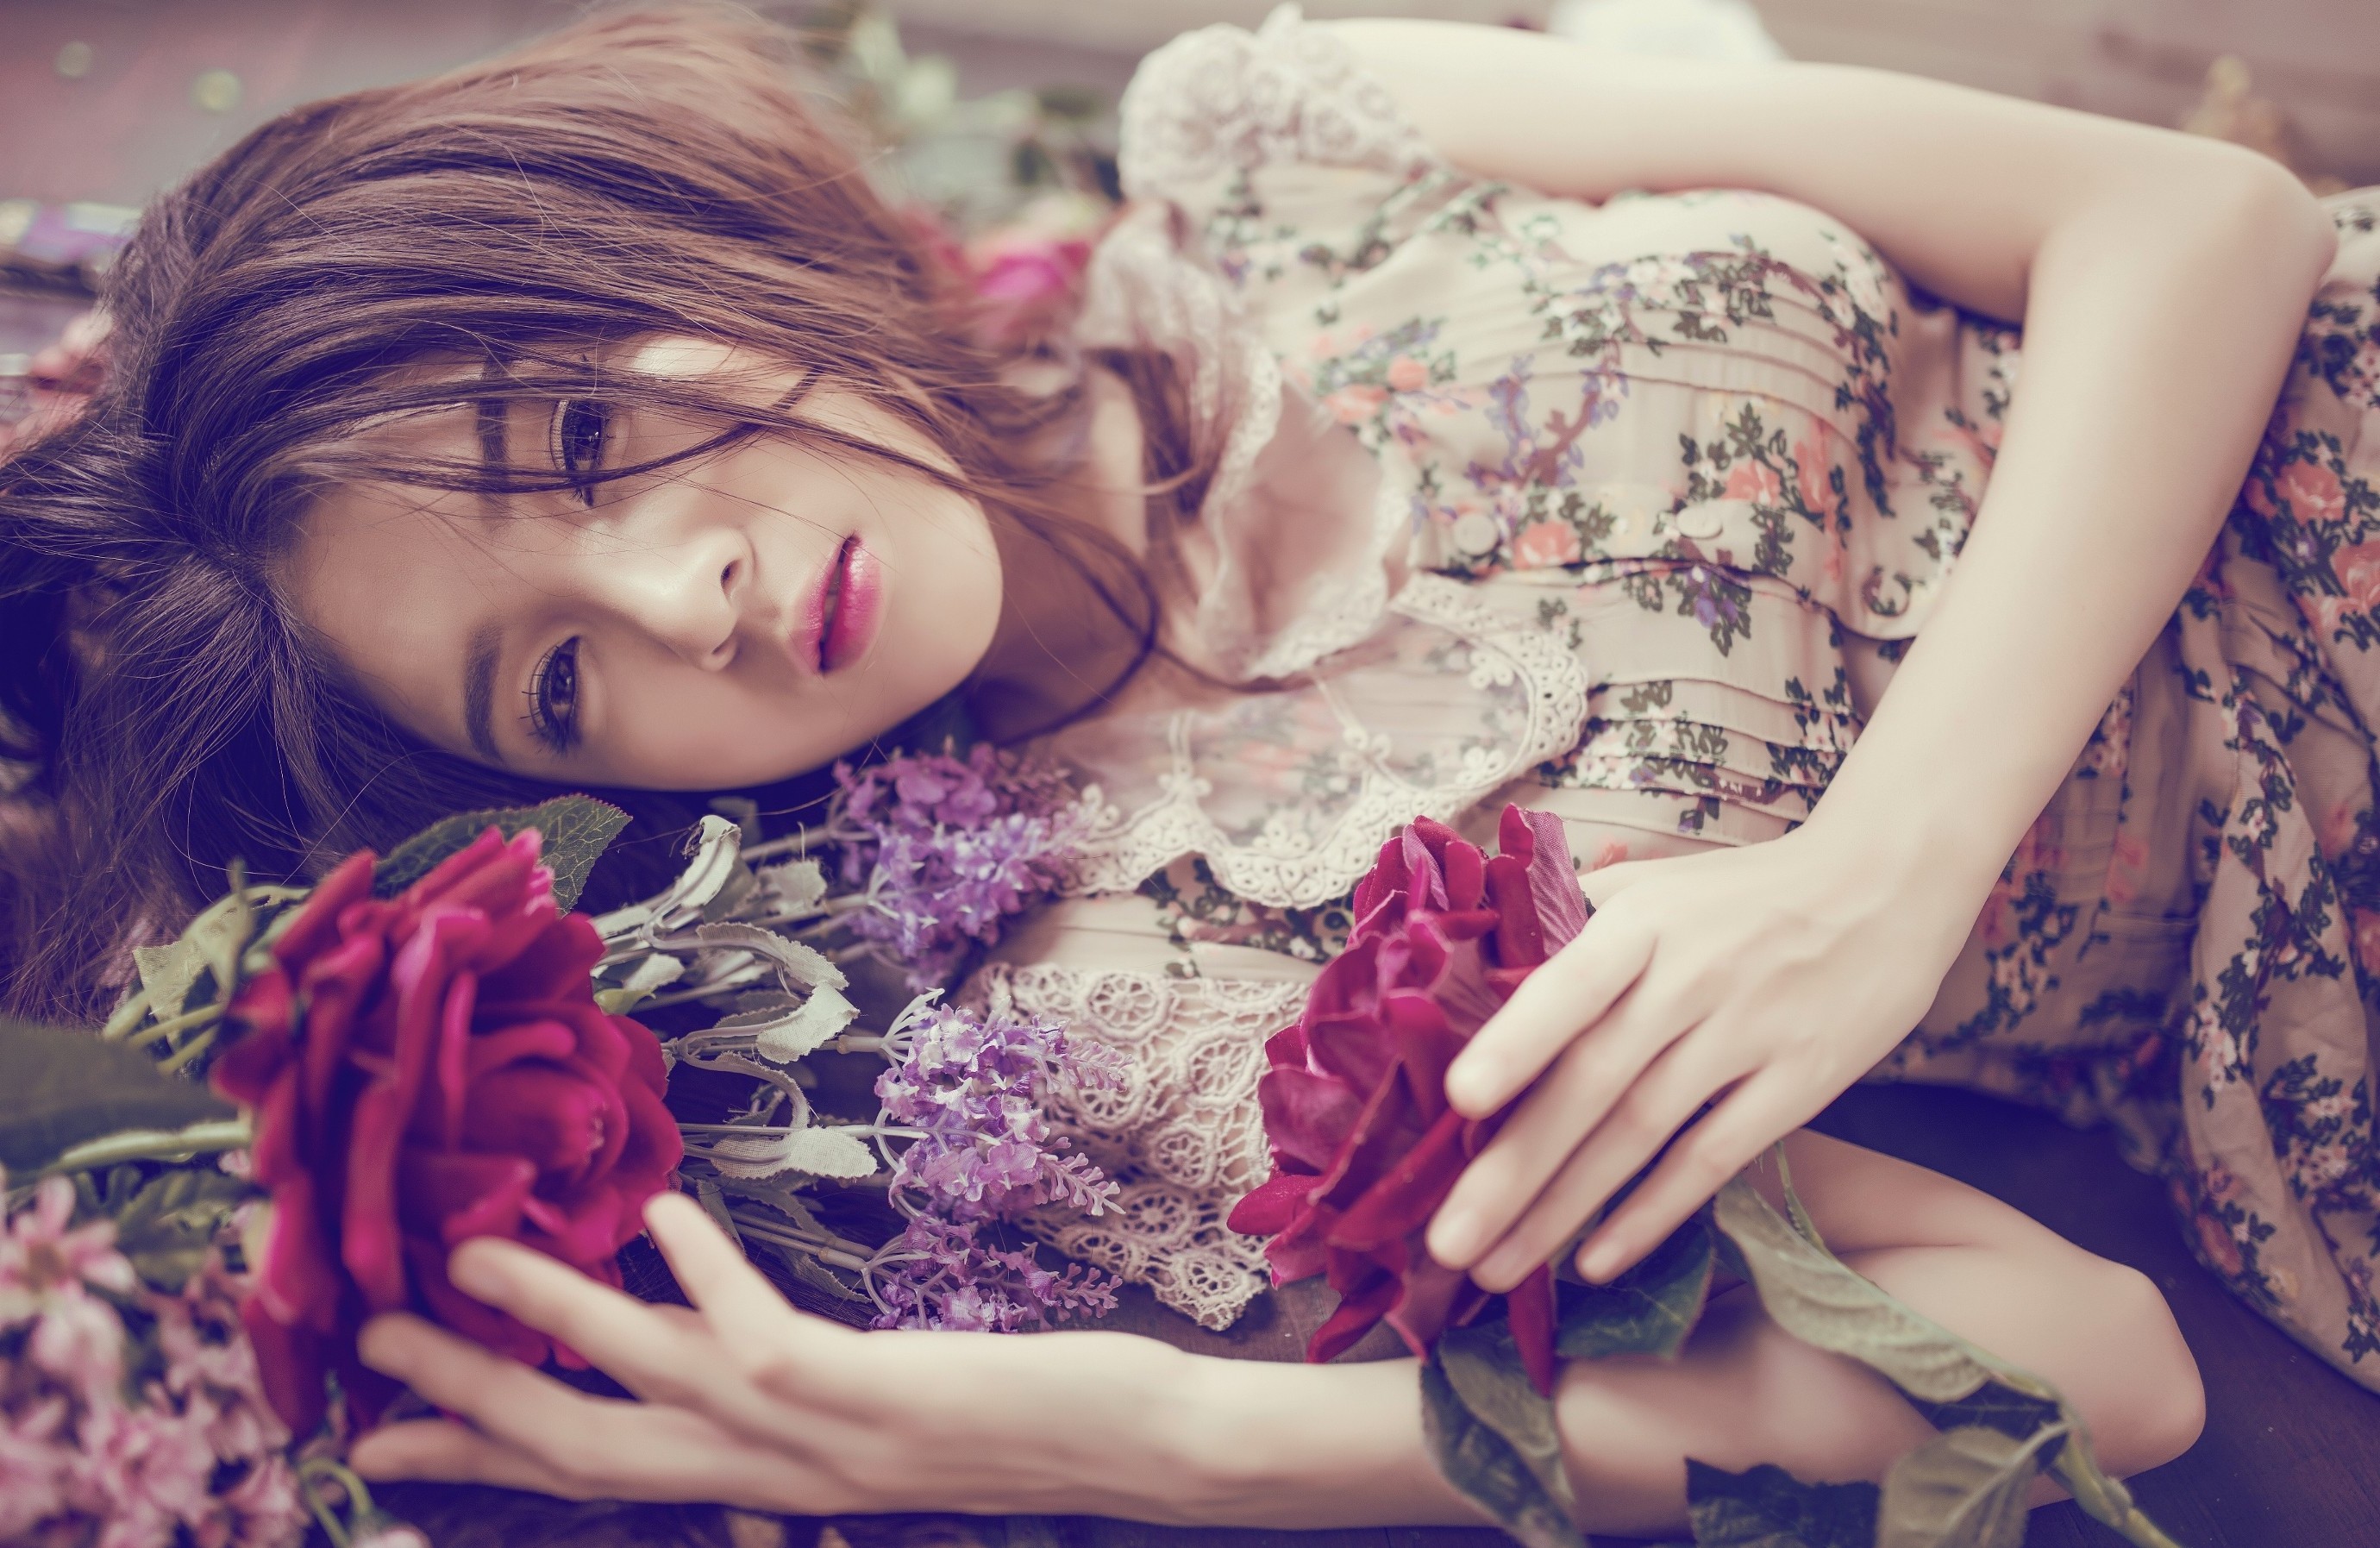 Asian, Women, Model, Flowers Wallpaper